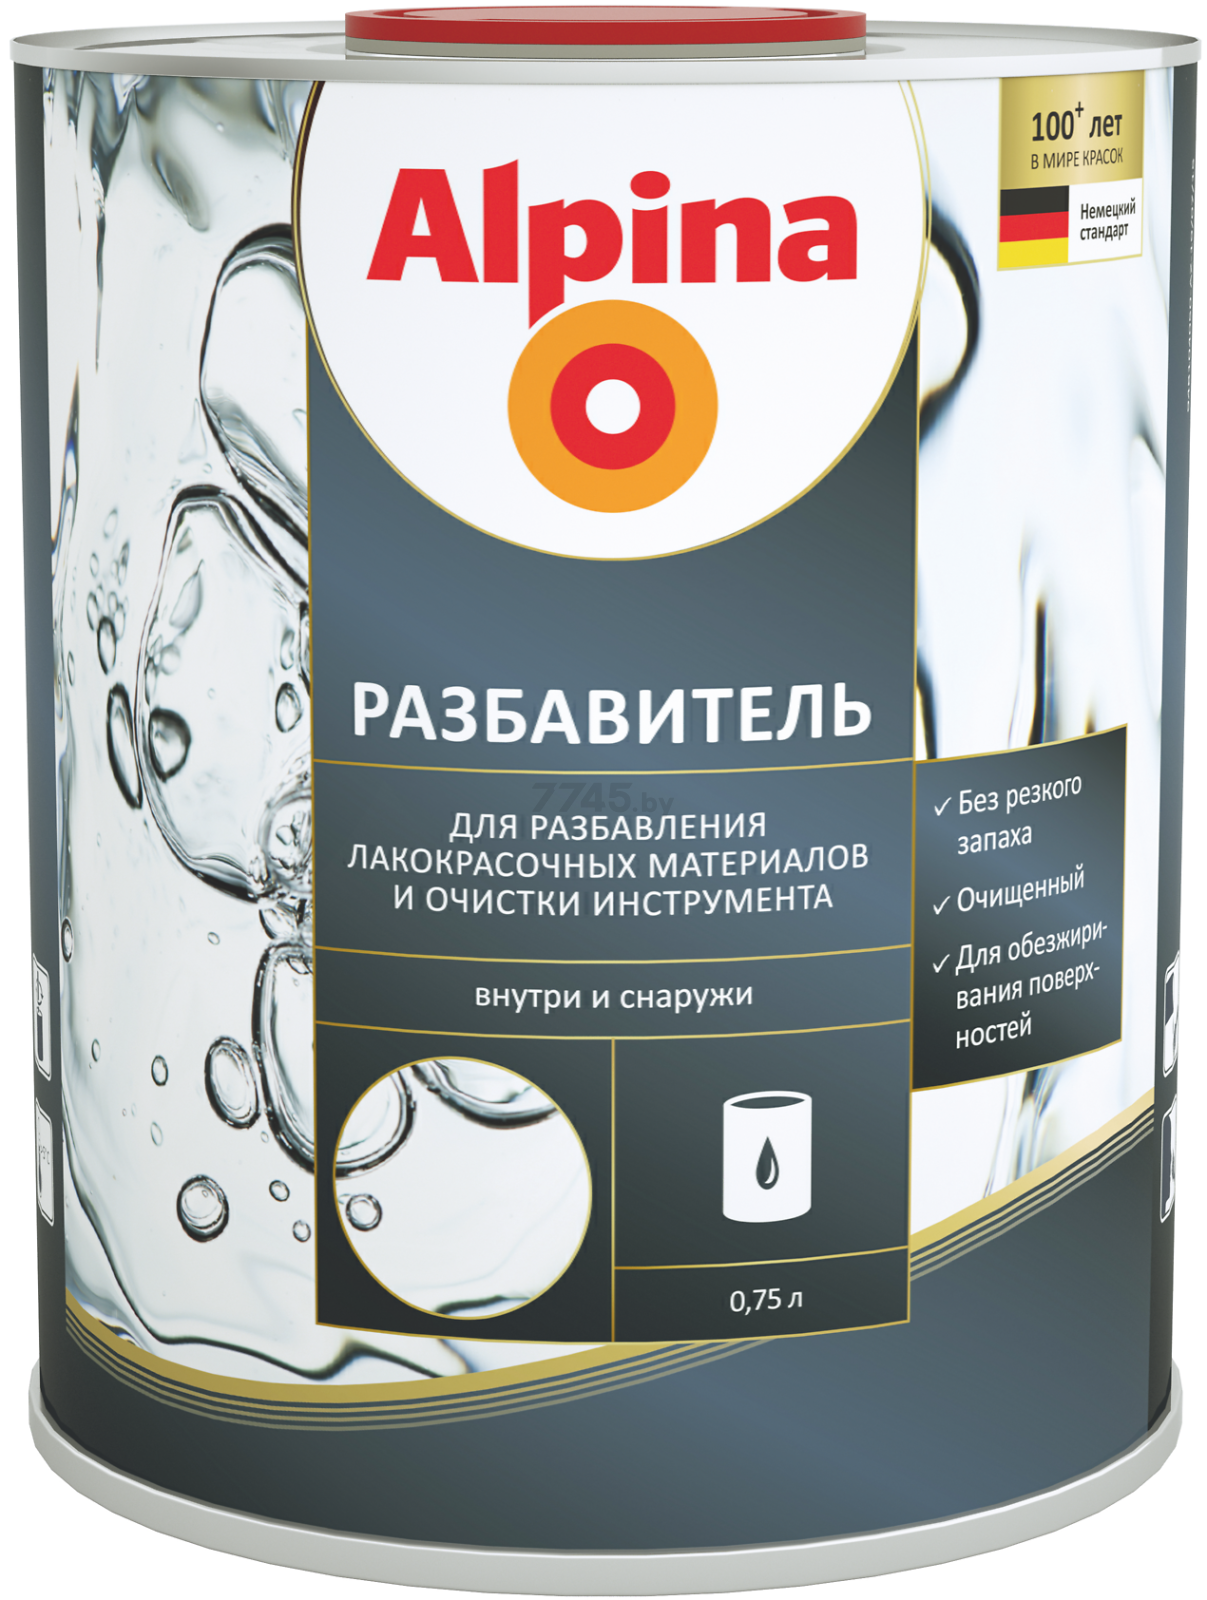 Разбавитель ALPINA 0,75 л